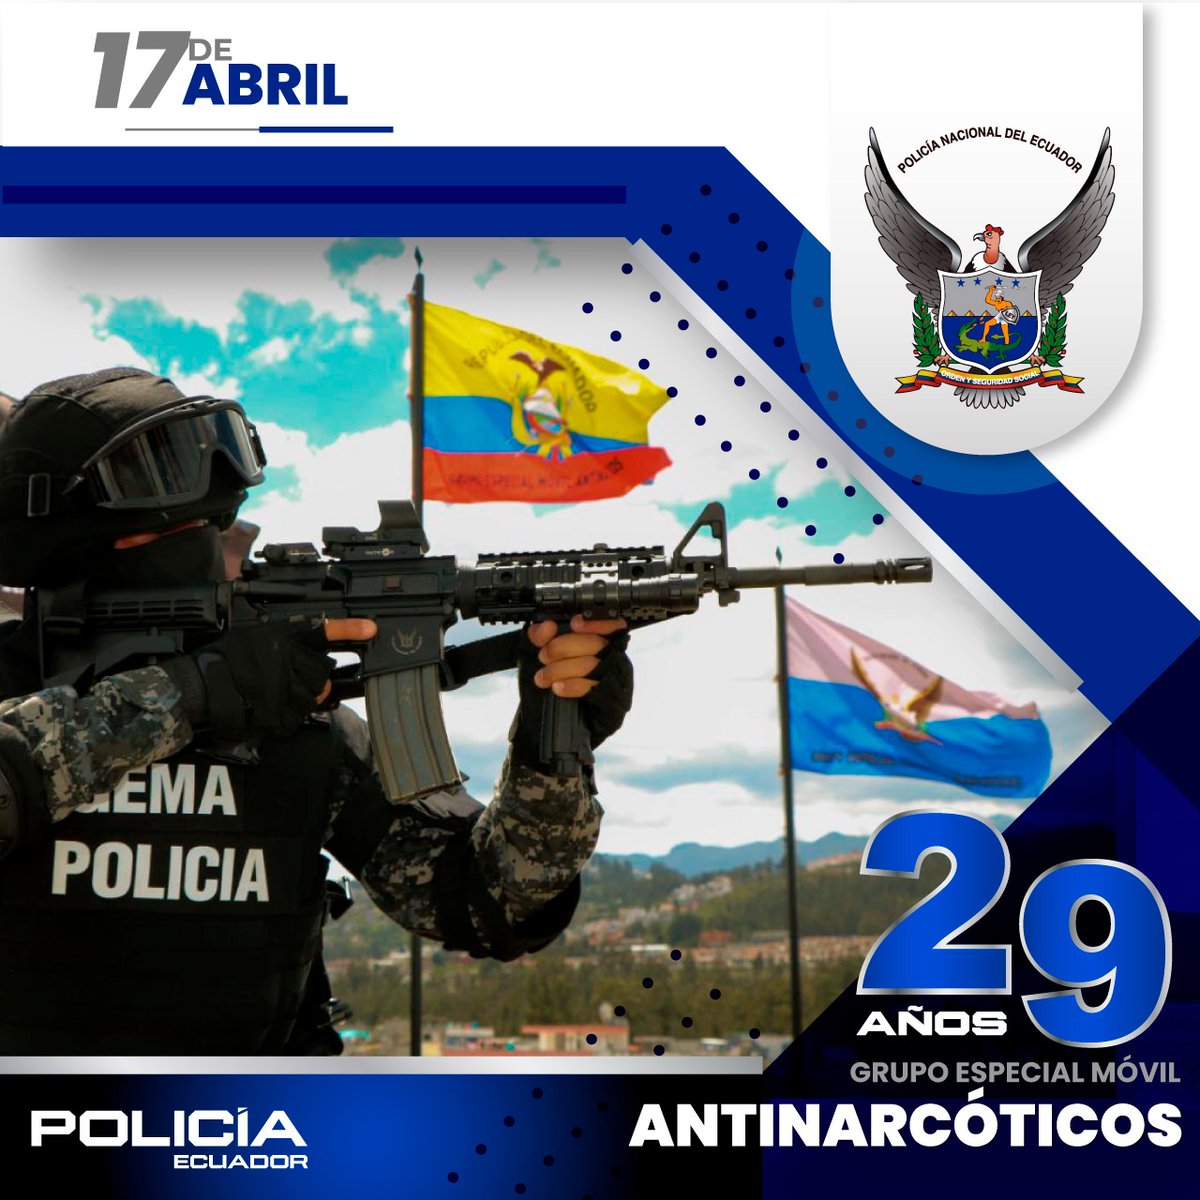 FELICITAMOS 👏👏

Al Grupo Especial Móvil Antinarcóticos #GEMA, por su vigésimo noveno aniversario de creación. 

Reconocemos y agradecemos a quienes conforman esta unidad, por su trabajo comprometido y profesional contra el narcotráfico.

#ServirYProteger
#PolicíaEcuador